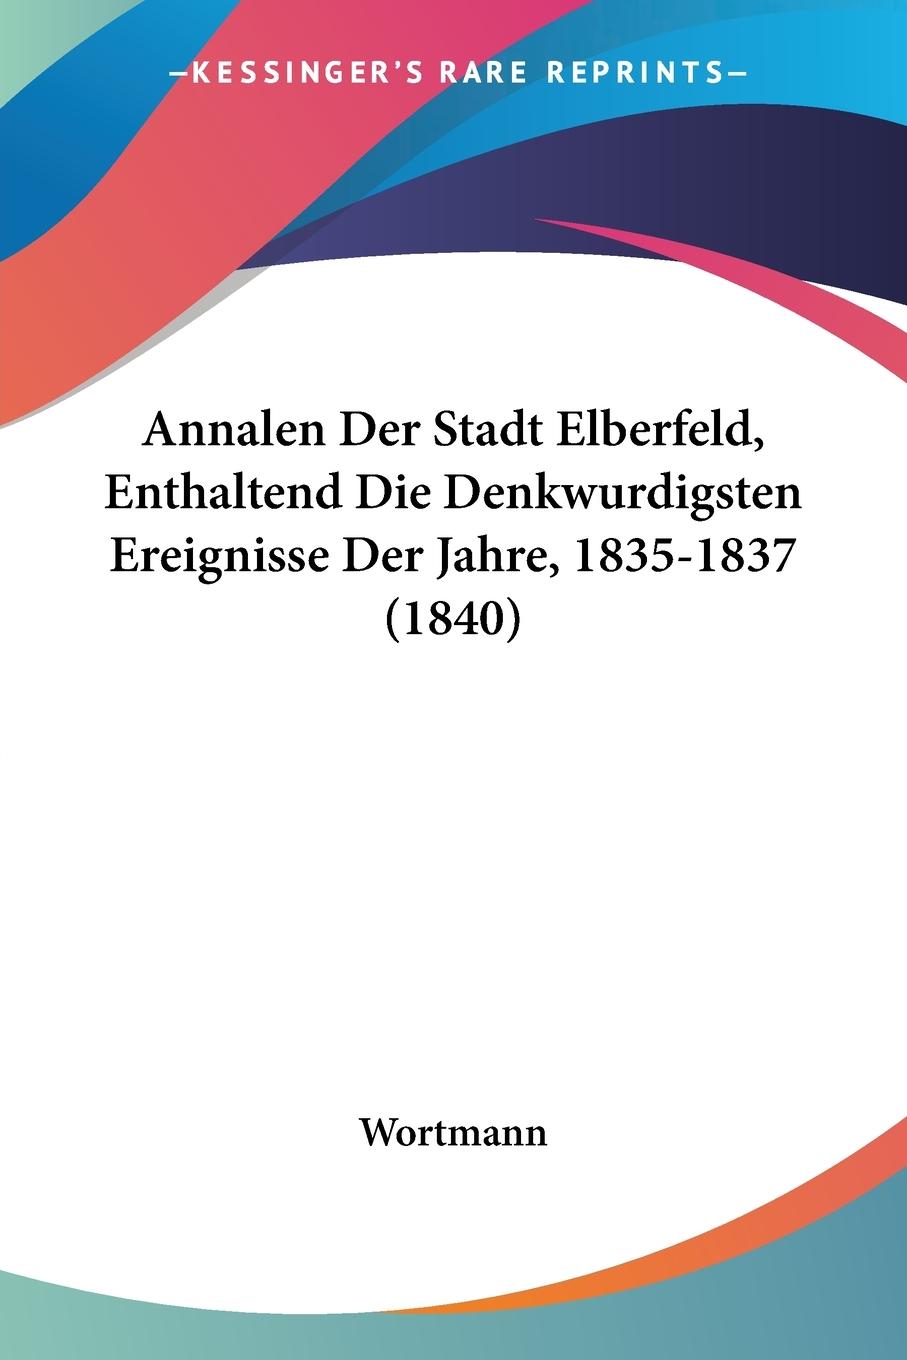 Annalen Der Stadt Elberfeld, Enthaltend Die Denkwurdigsten Ereignisse Der Jahre, 1835-1837 (1840) - Wortmann